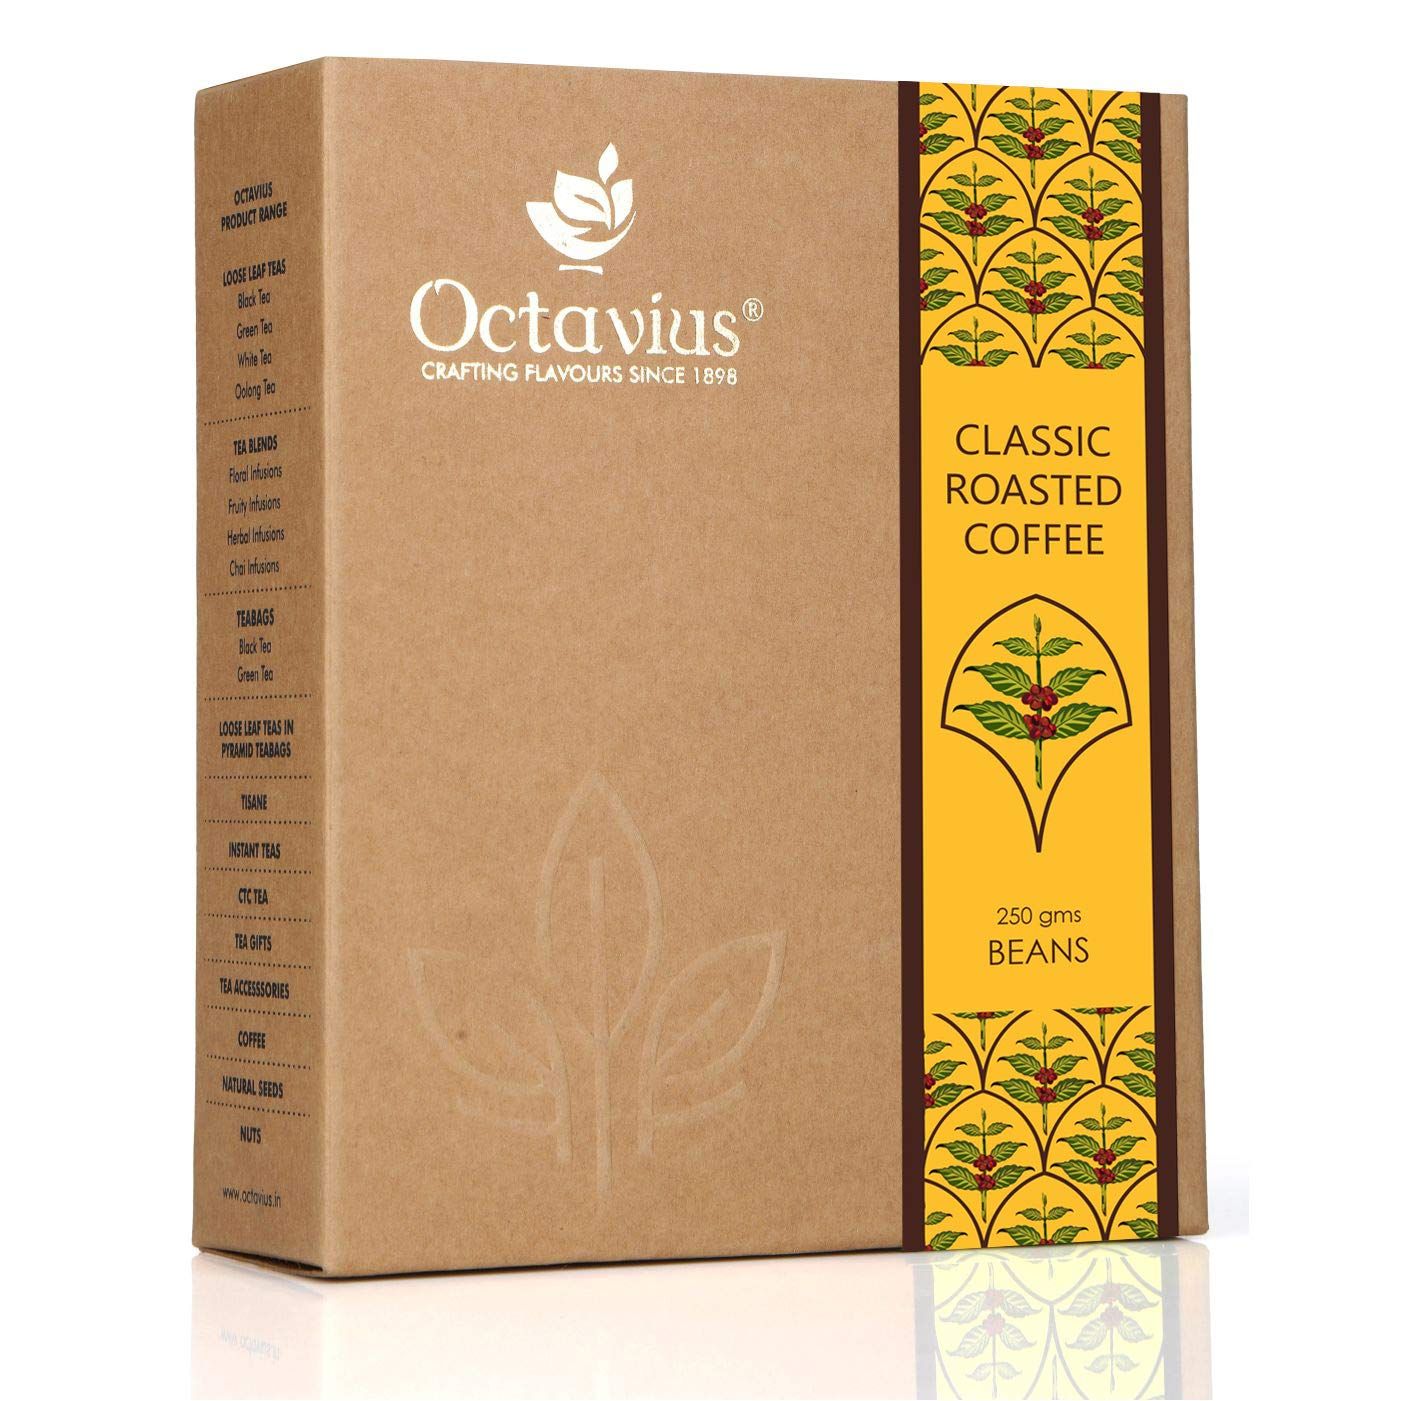 Octavis Classic Roasted Coffee Image